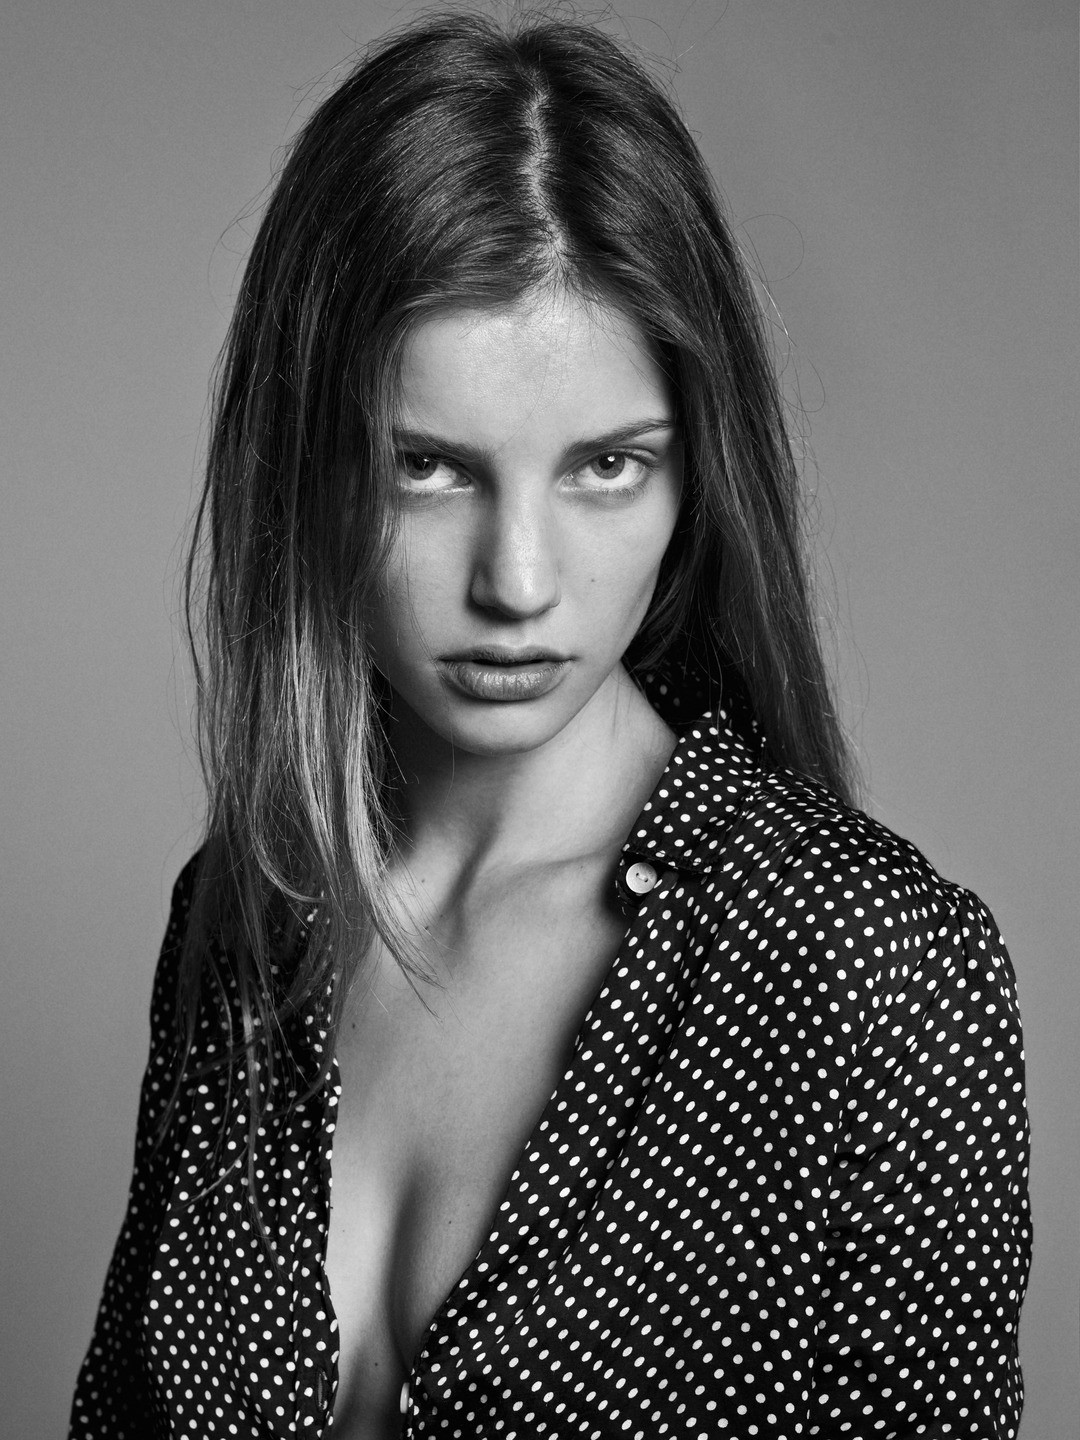 Photo of model Astrid Baarsma - ID 432318.